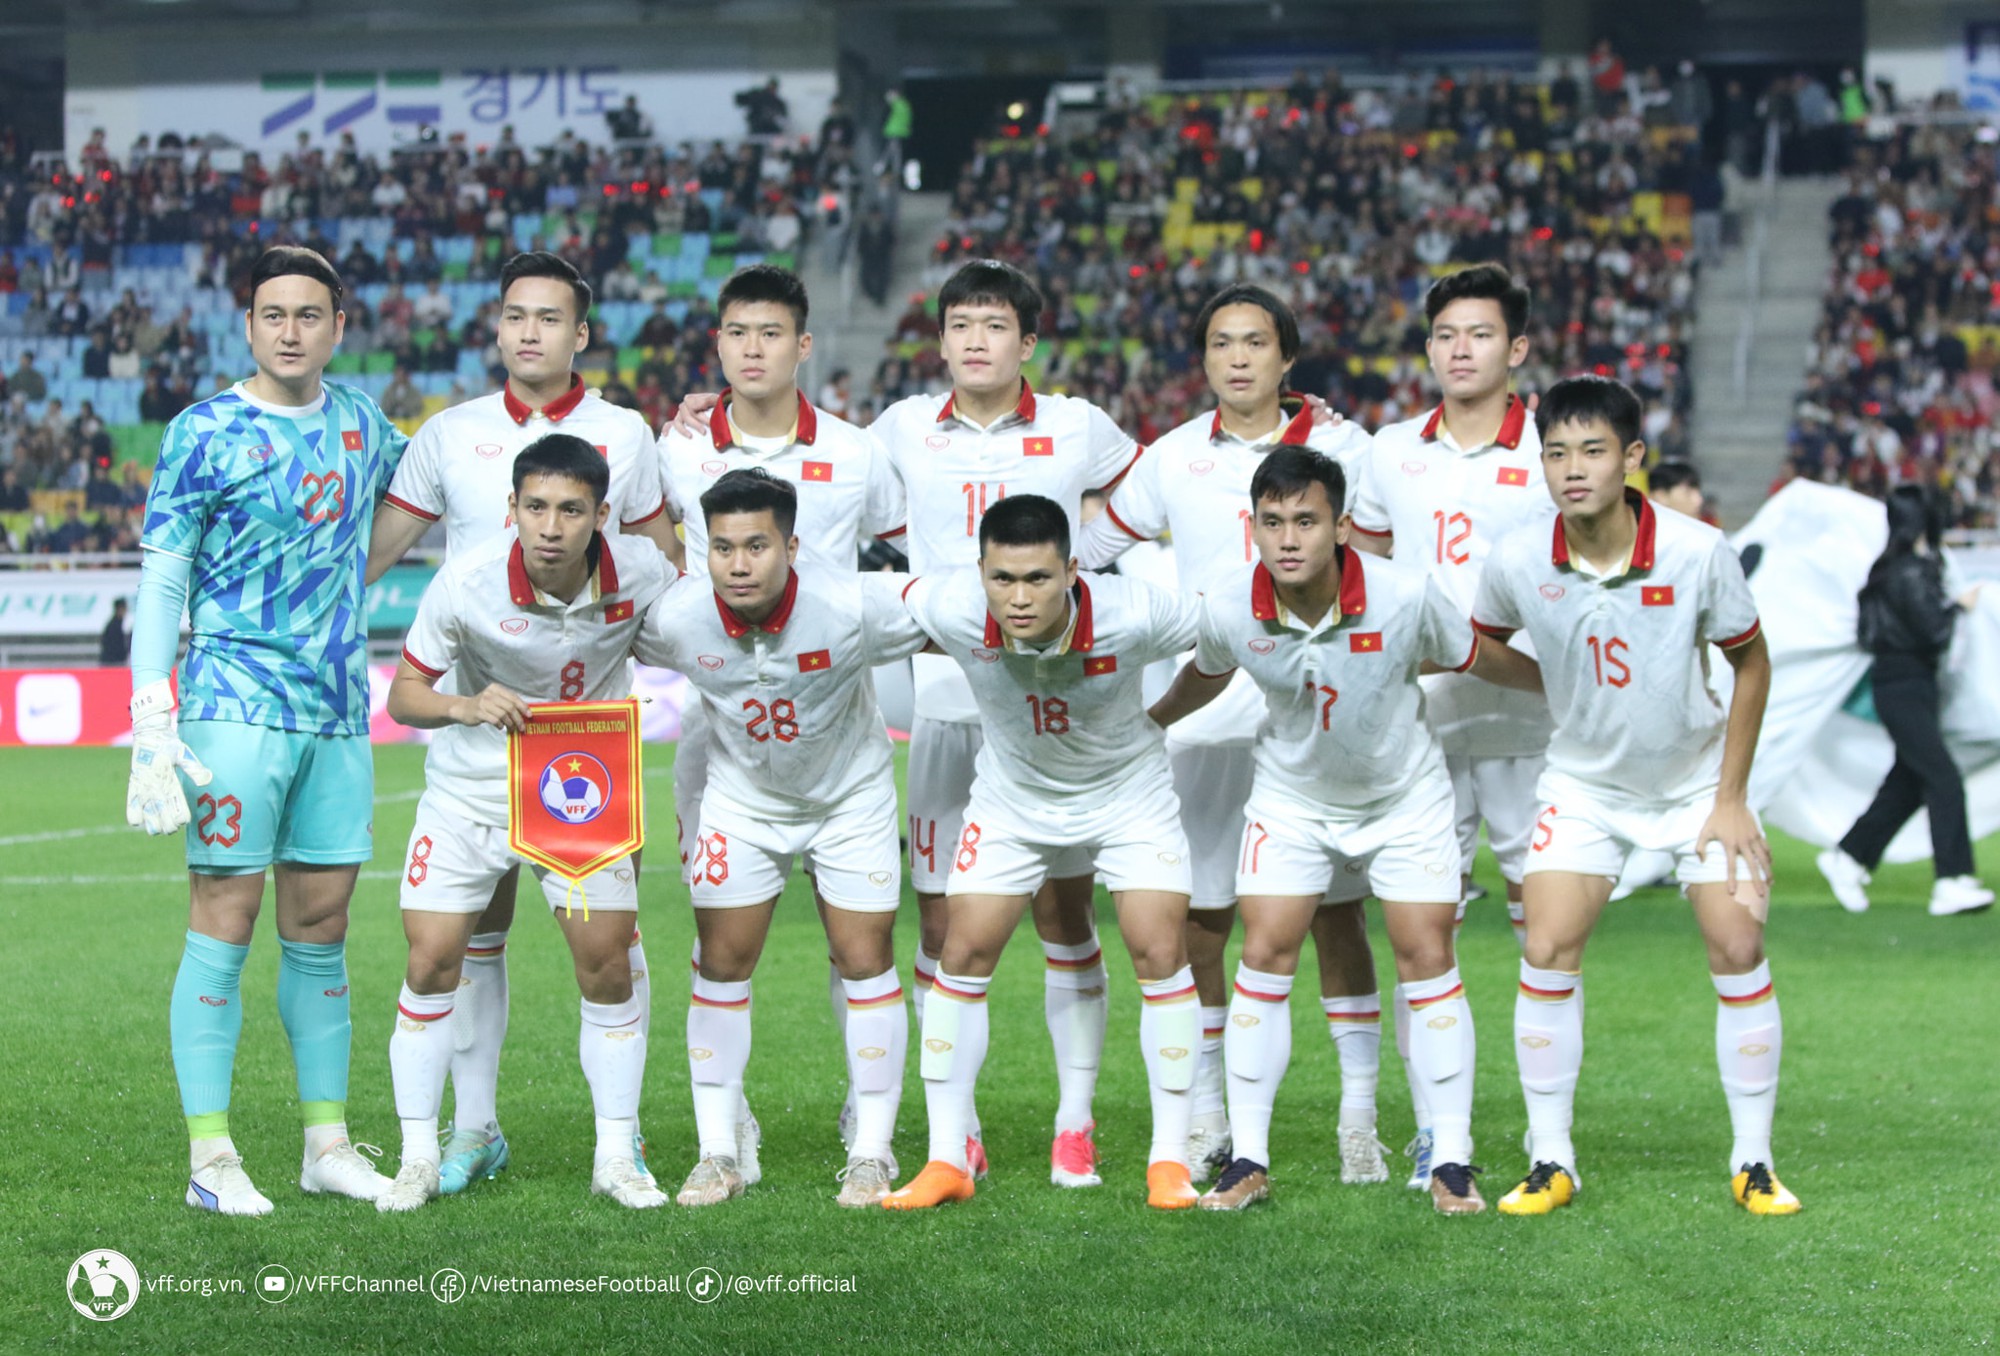 Bước tiến thần tốc của cầu thủ trẻ nhất đội tuyển Việt Nam - Ảnh 1.